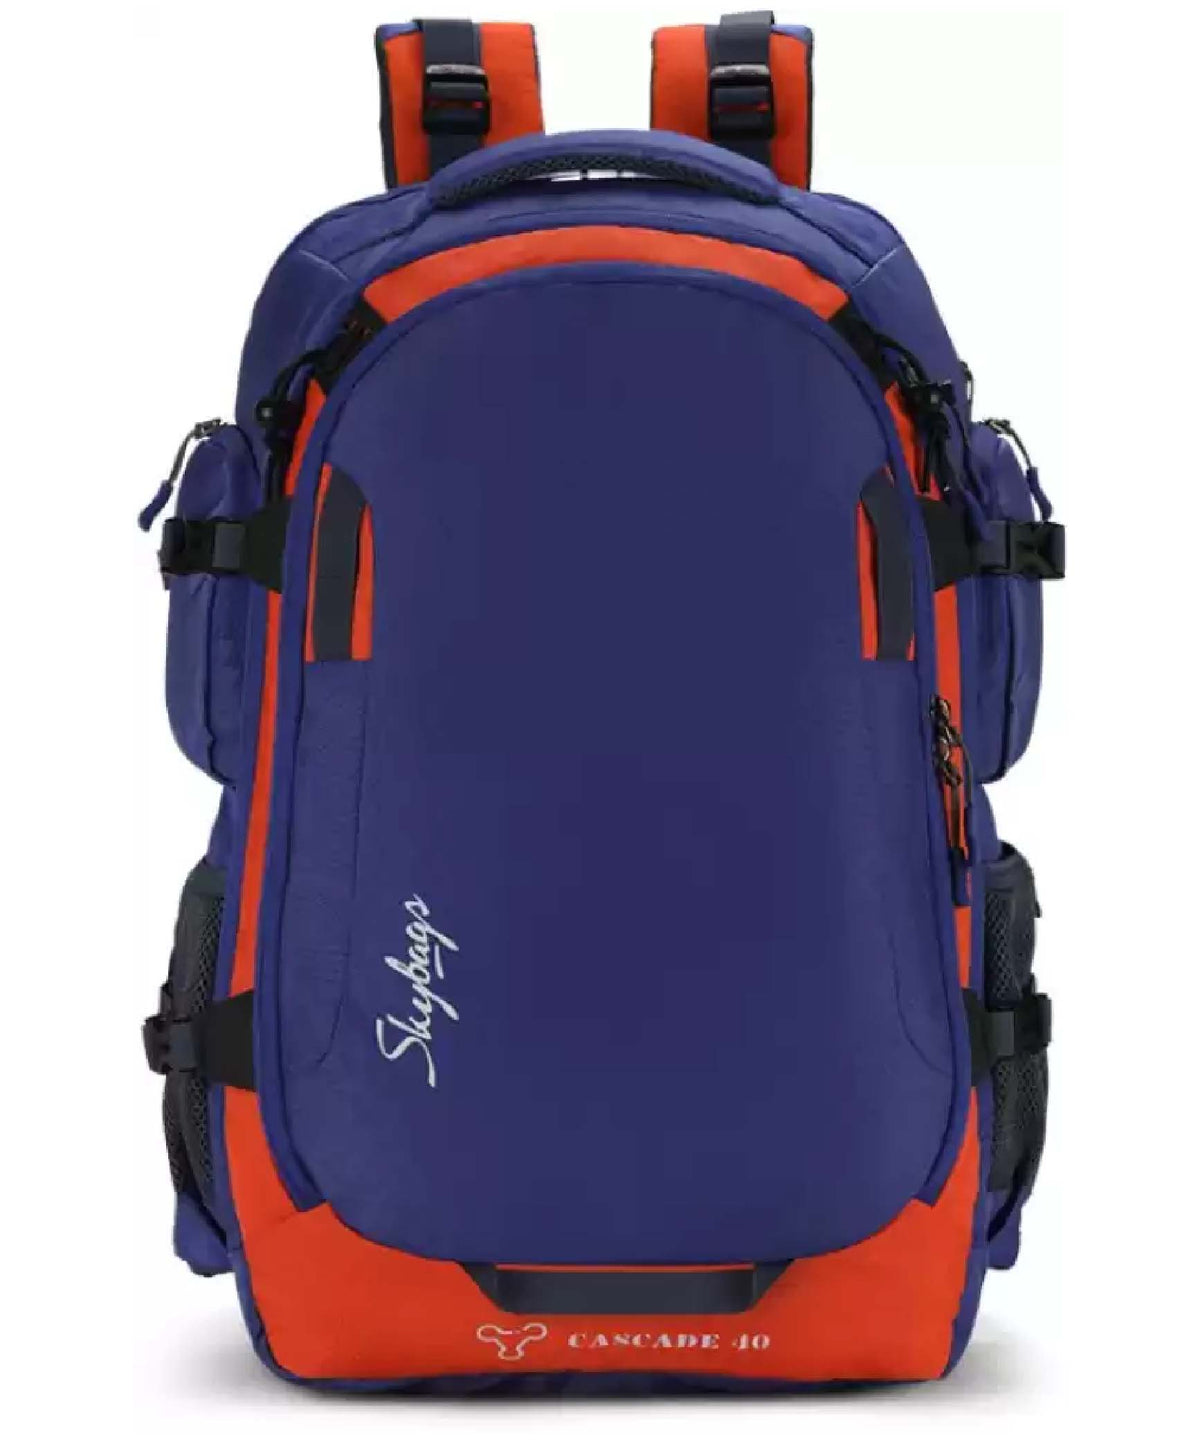 Skybag, Weekender 42 Litres Indigo Hiking Backpack, CASC40IND